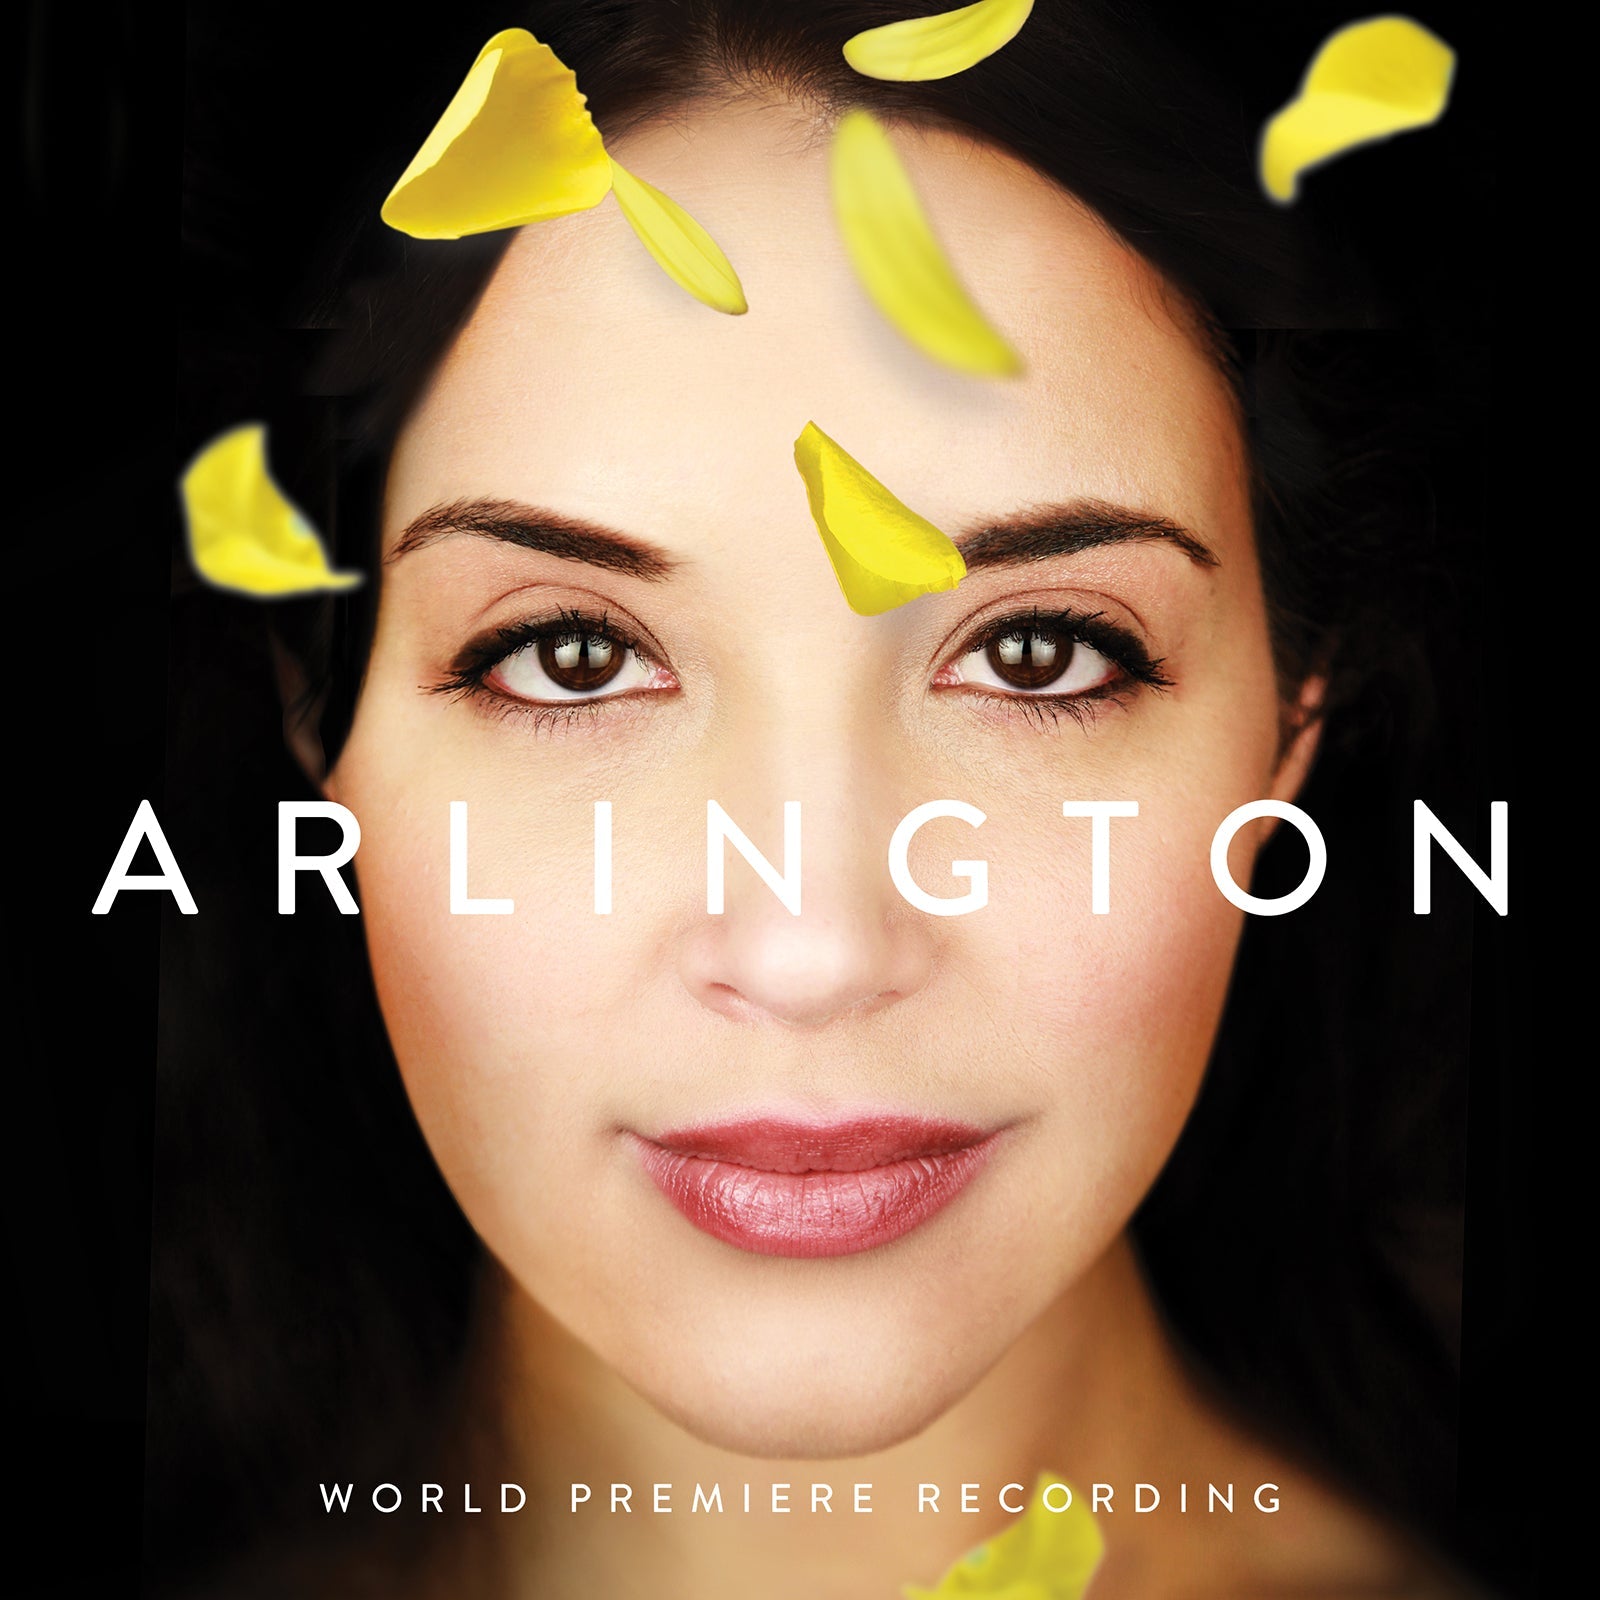 Arlington (World Premiere Recording) [MP3]